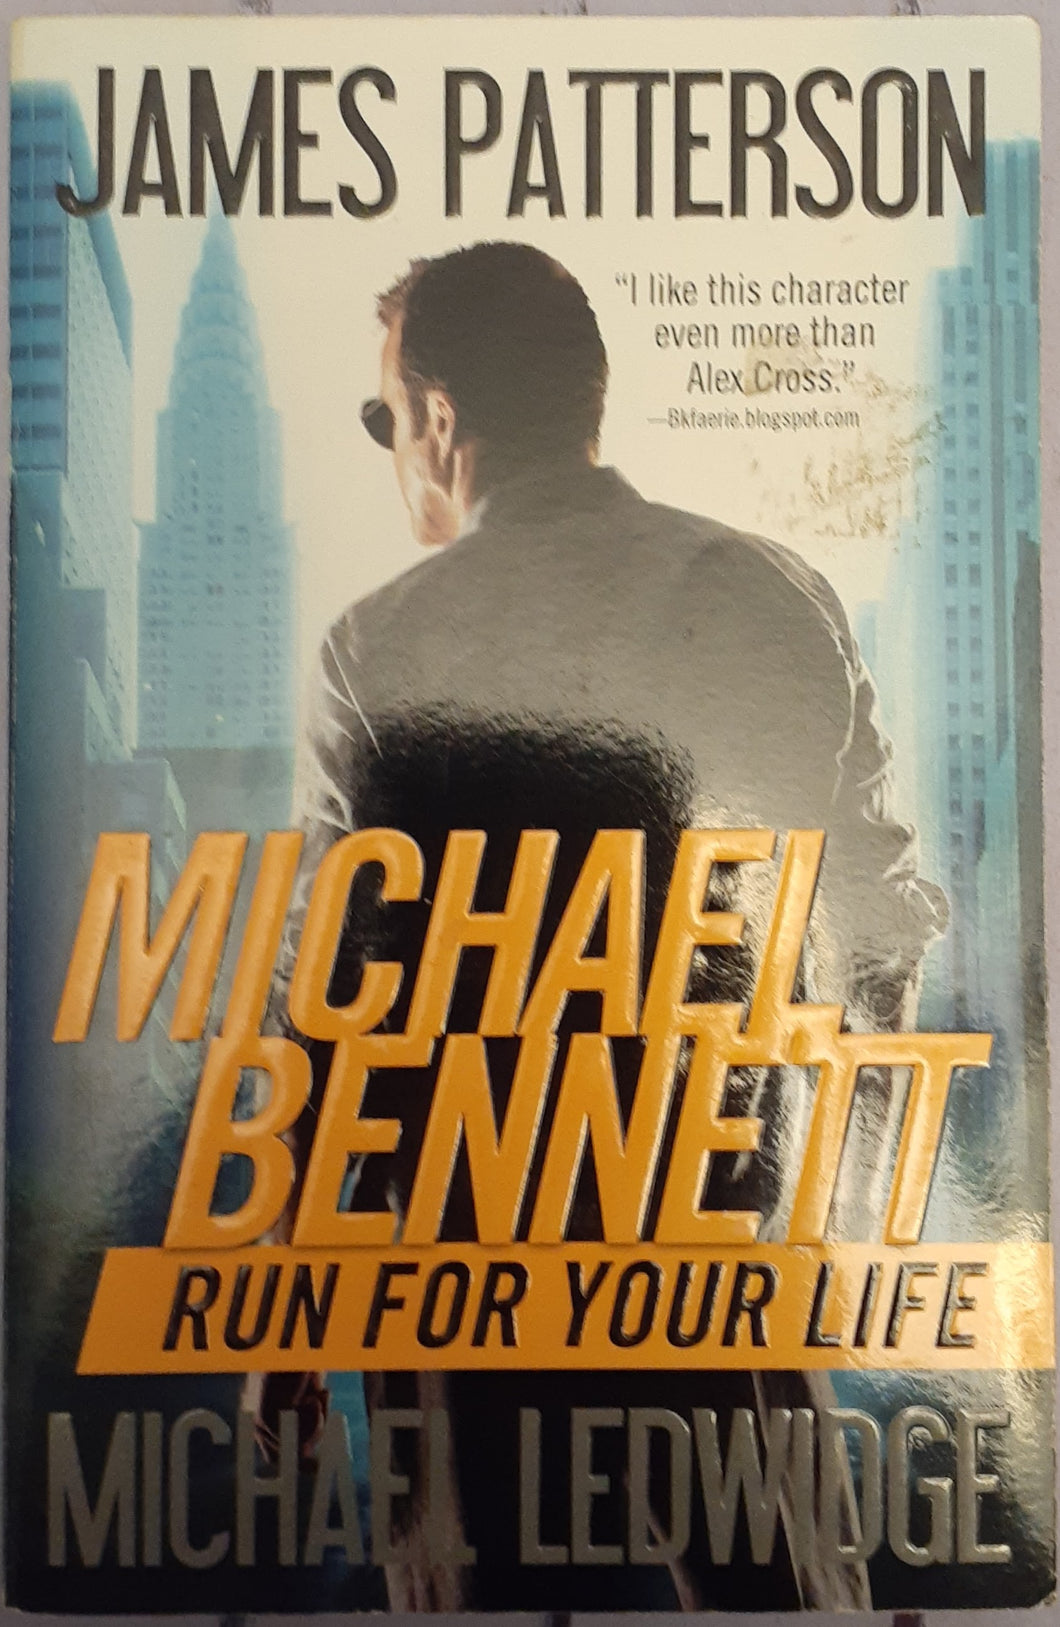 Michael Bennett - Run for your Life